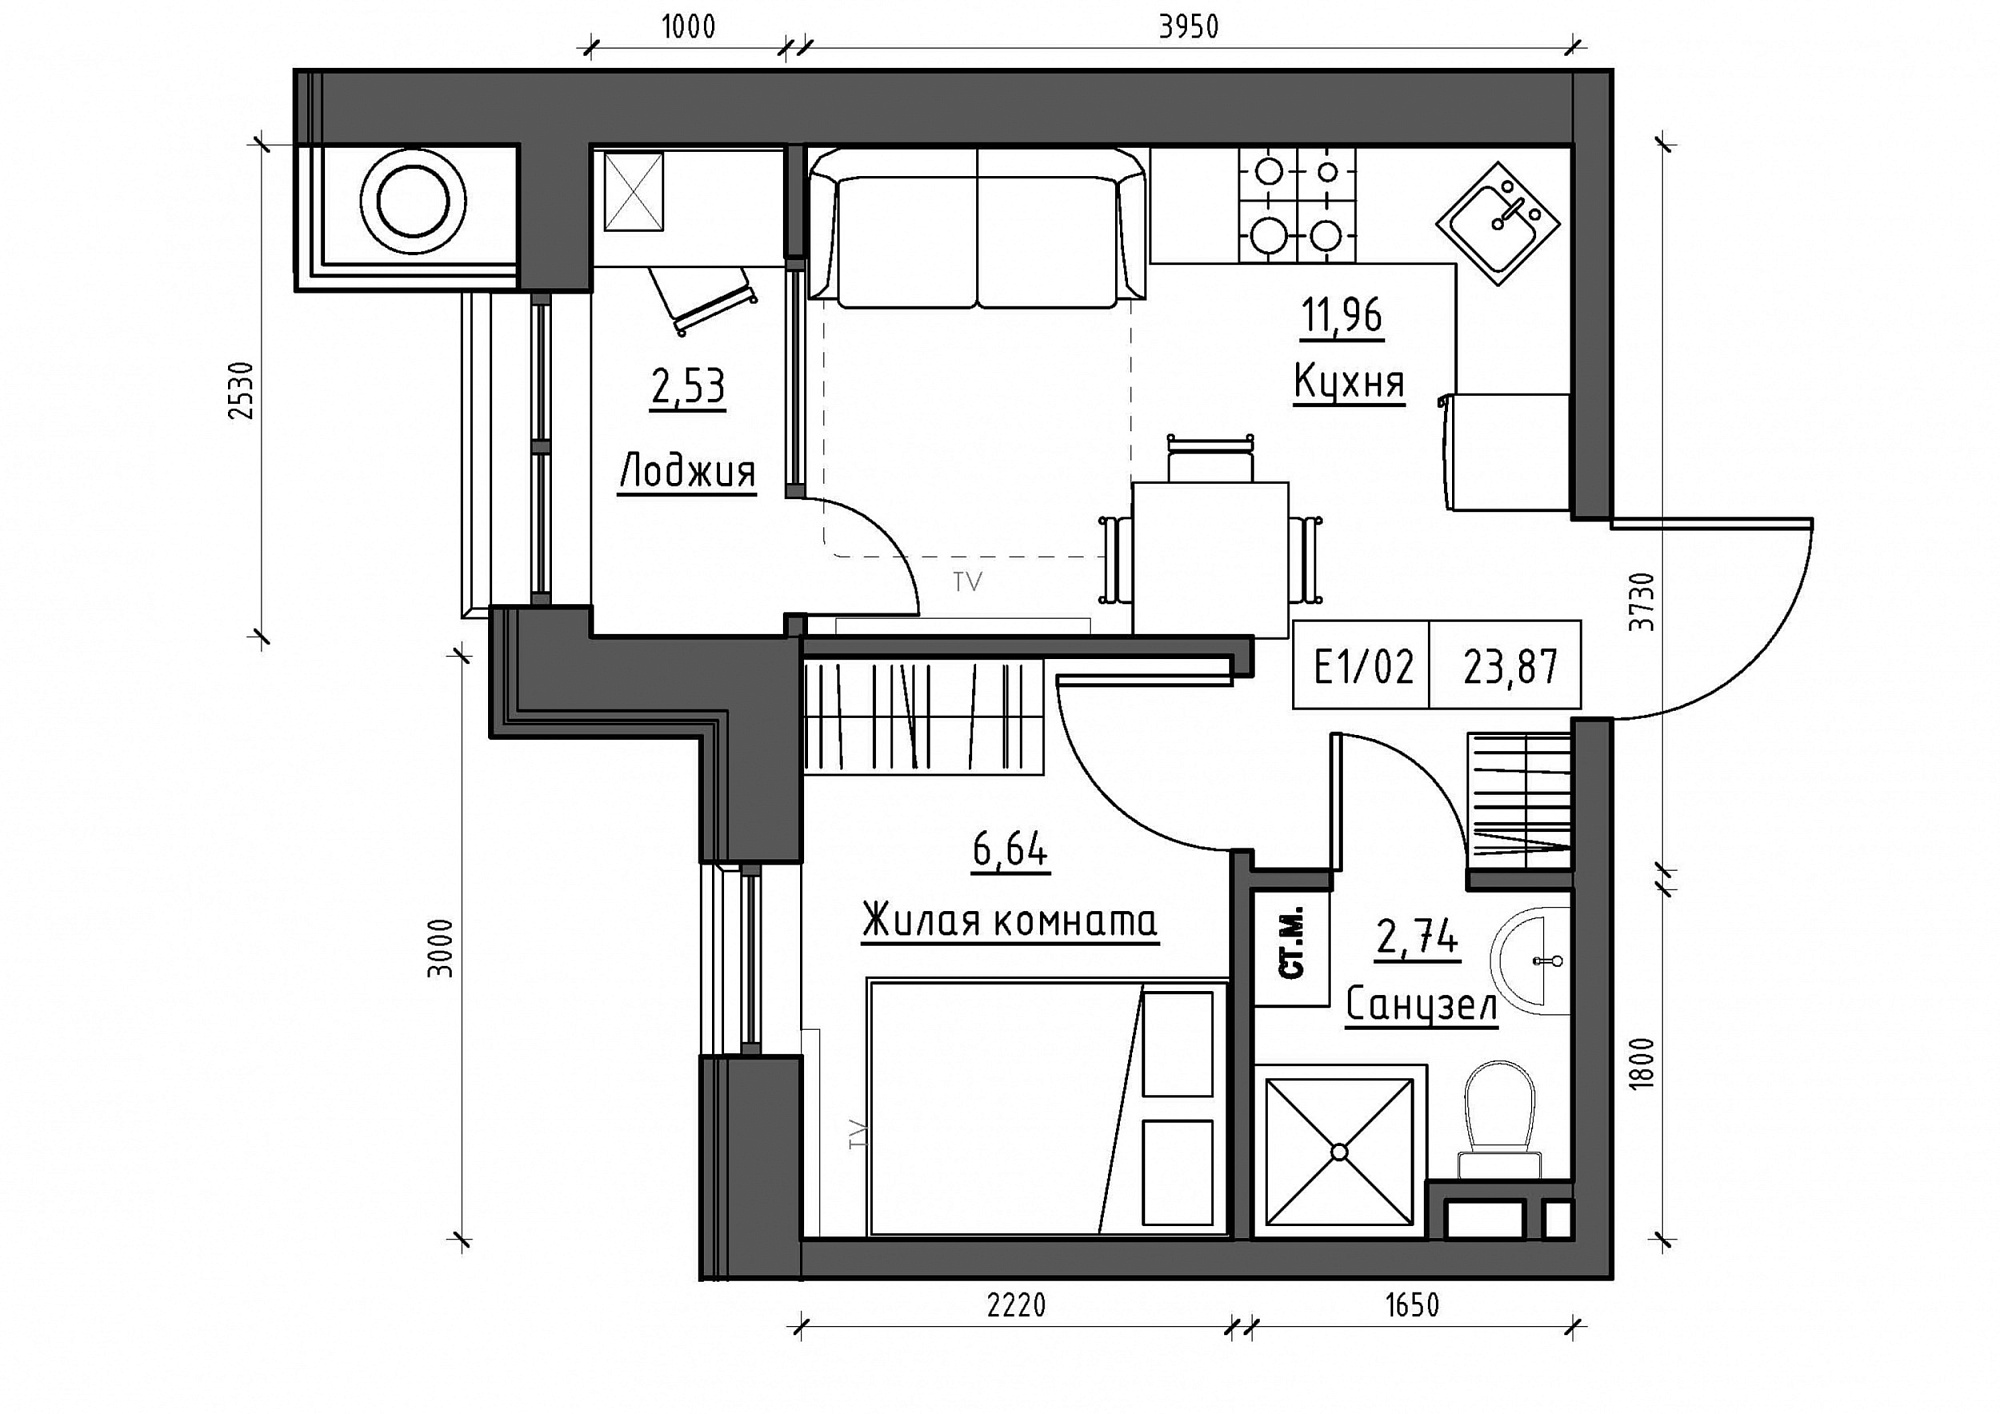 Планування 1-к квартира площею 23.87м2, KS-011-01/0001.